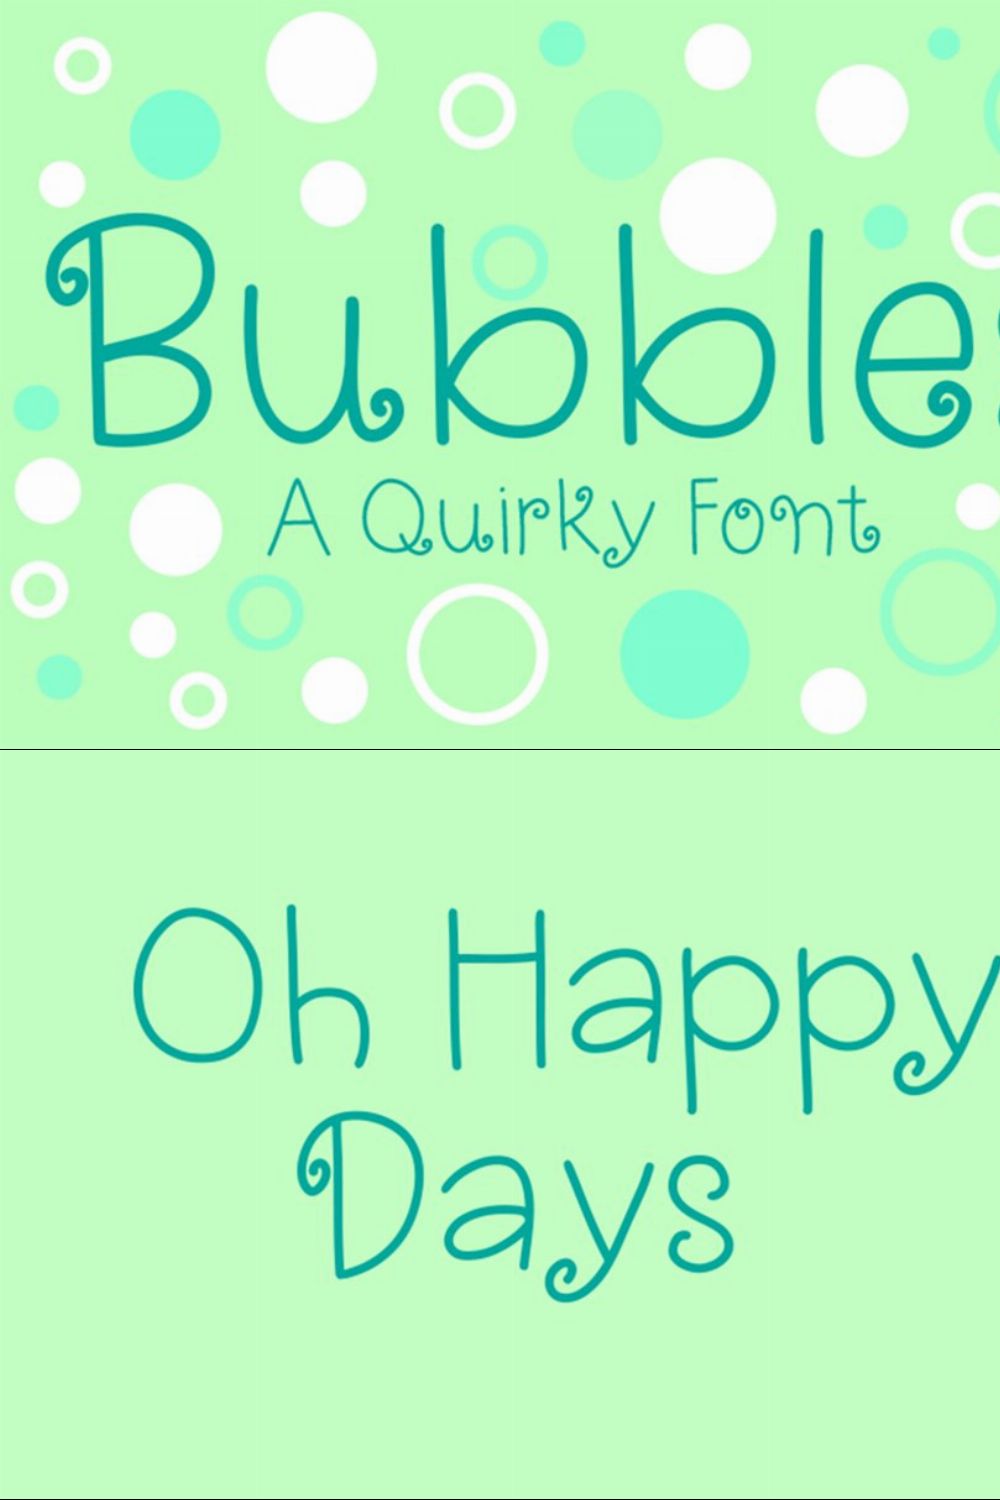 Bubbles pinterest preview image.